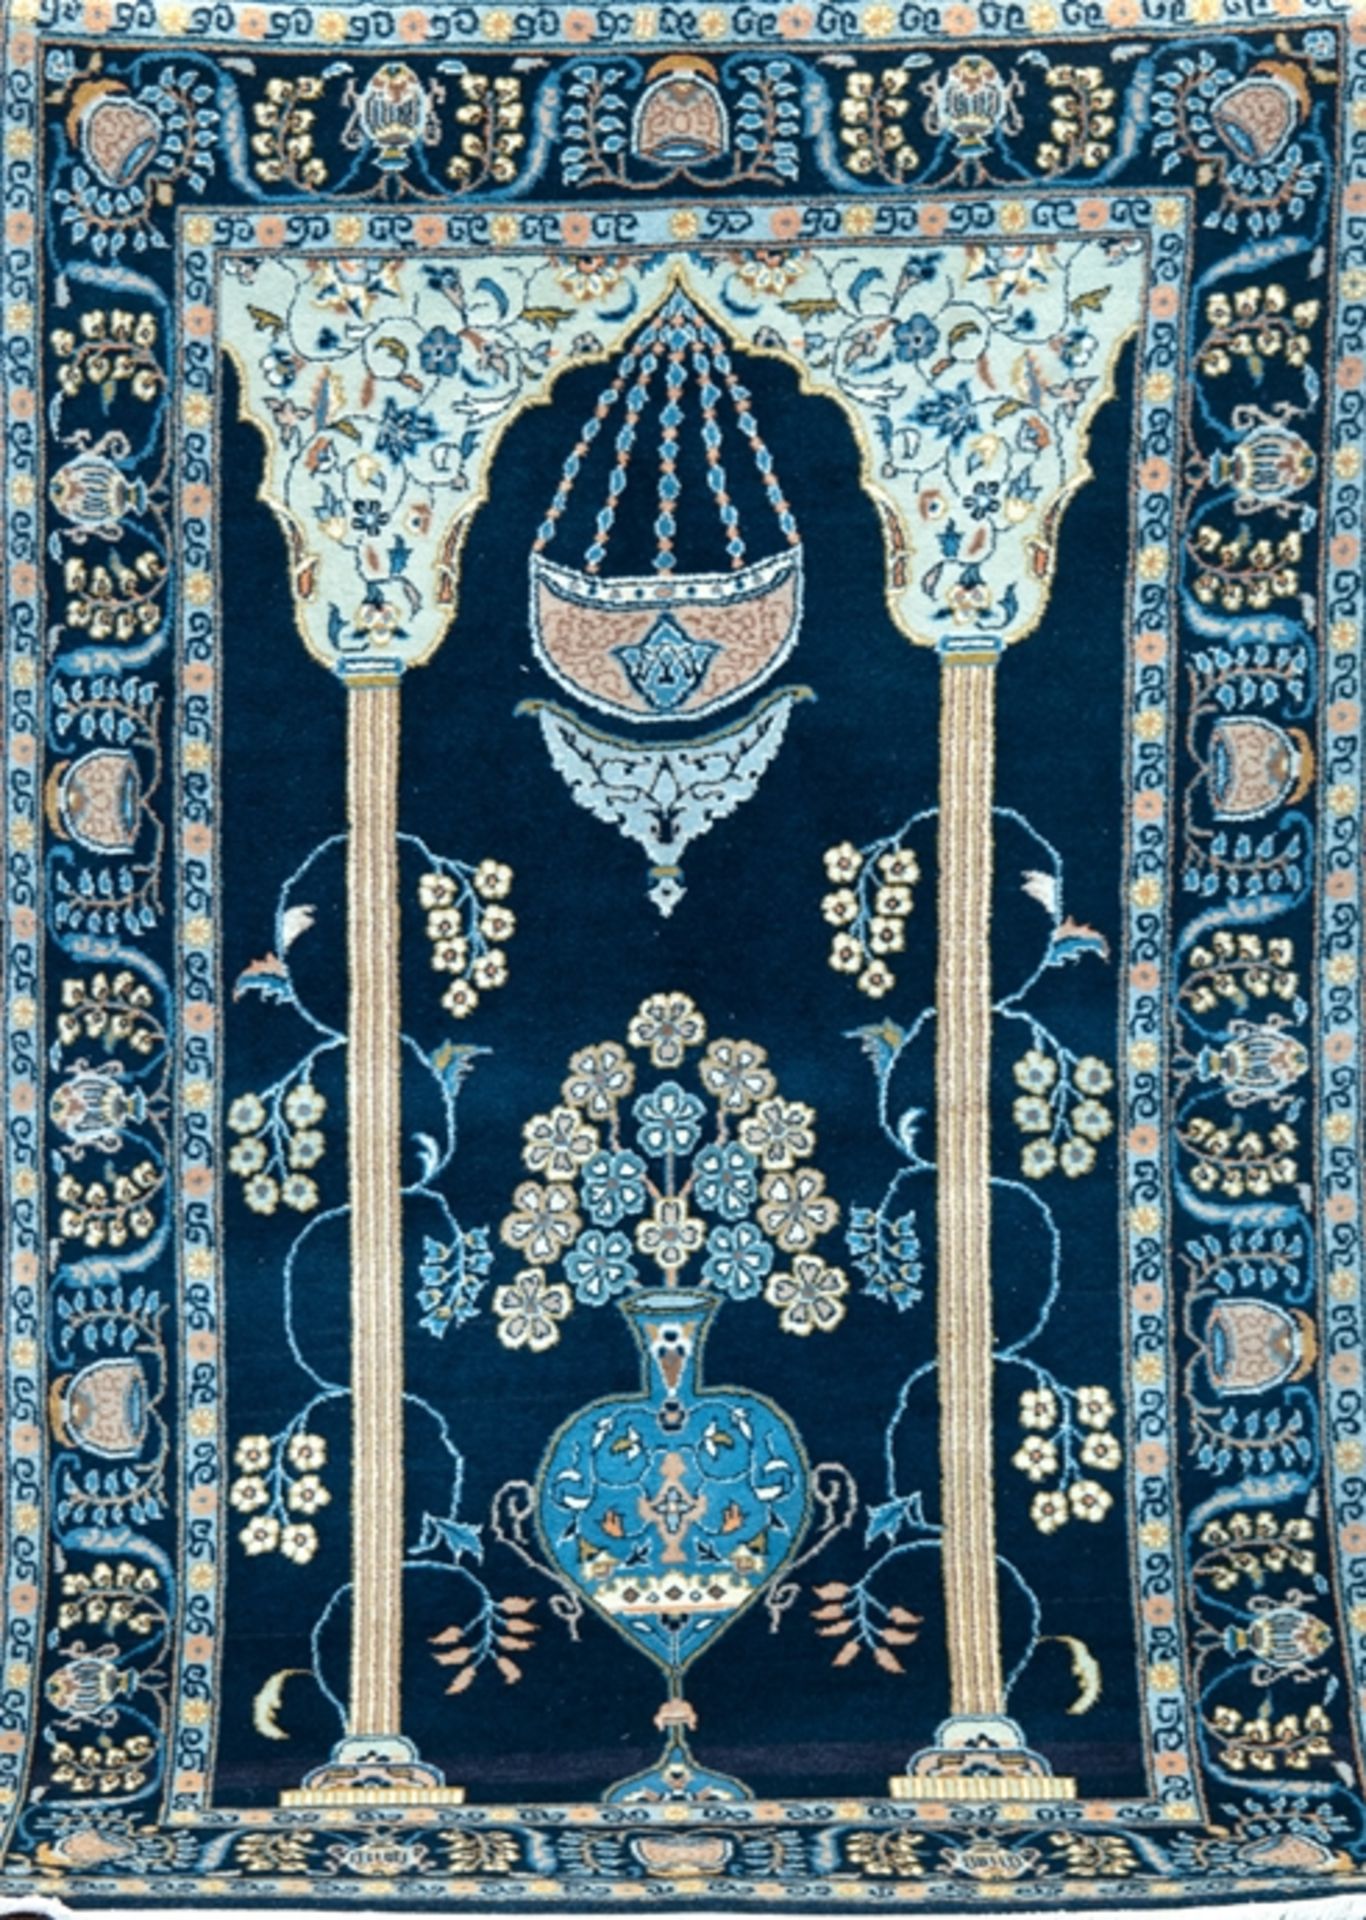 Keschan, Persien, blaugrundig mit Vasenmuster und Gebetsgiebel, Kanten belaufen, 2 Florfehlstellen,